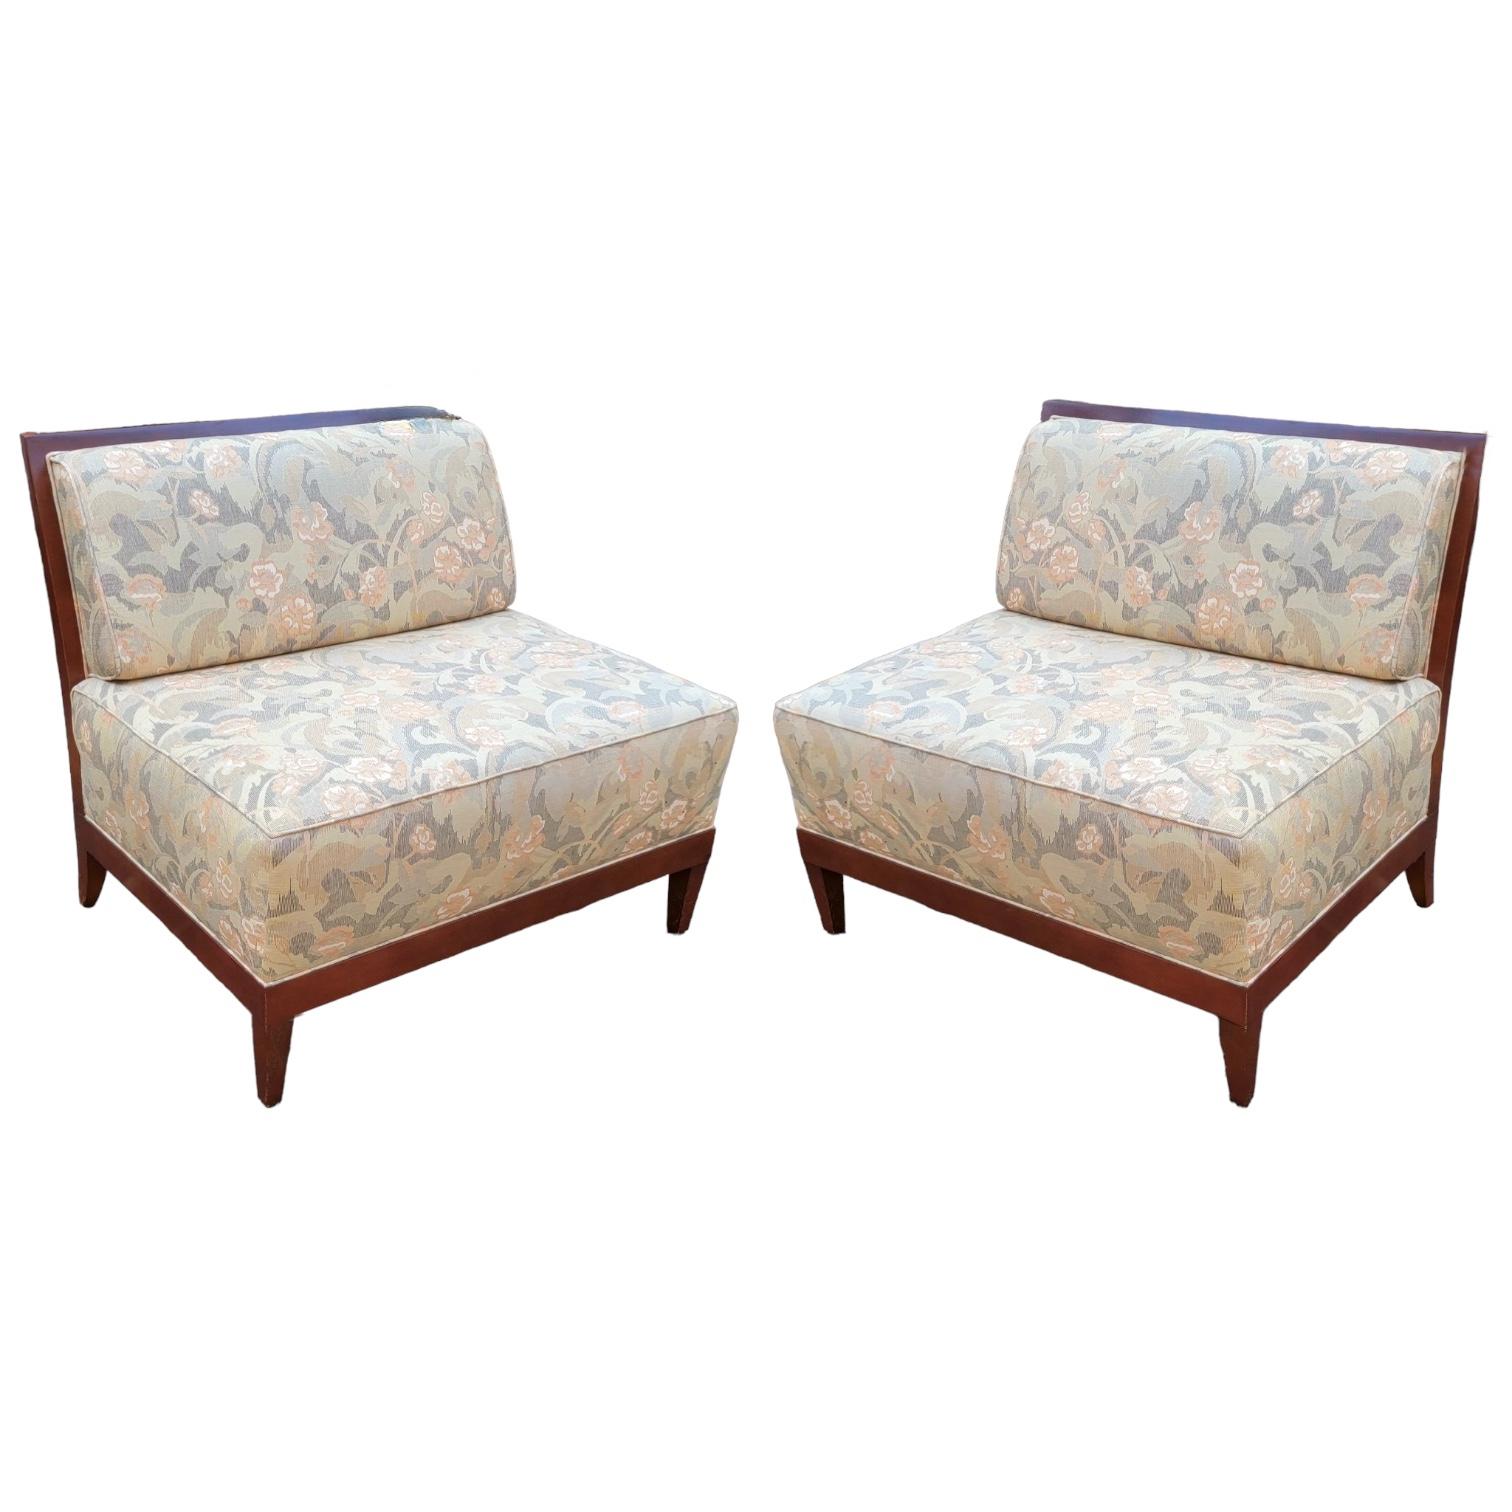 Dies ist ein Paar Art-Deco-Sofas von Baker Furniture. Die Rückseiten sind aus Mahagoni mit Intarsien. Die Polsterung ist Vintage, aber in sehr gutem Zustand. Sie sind gekennzeichnet.